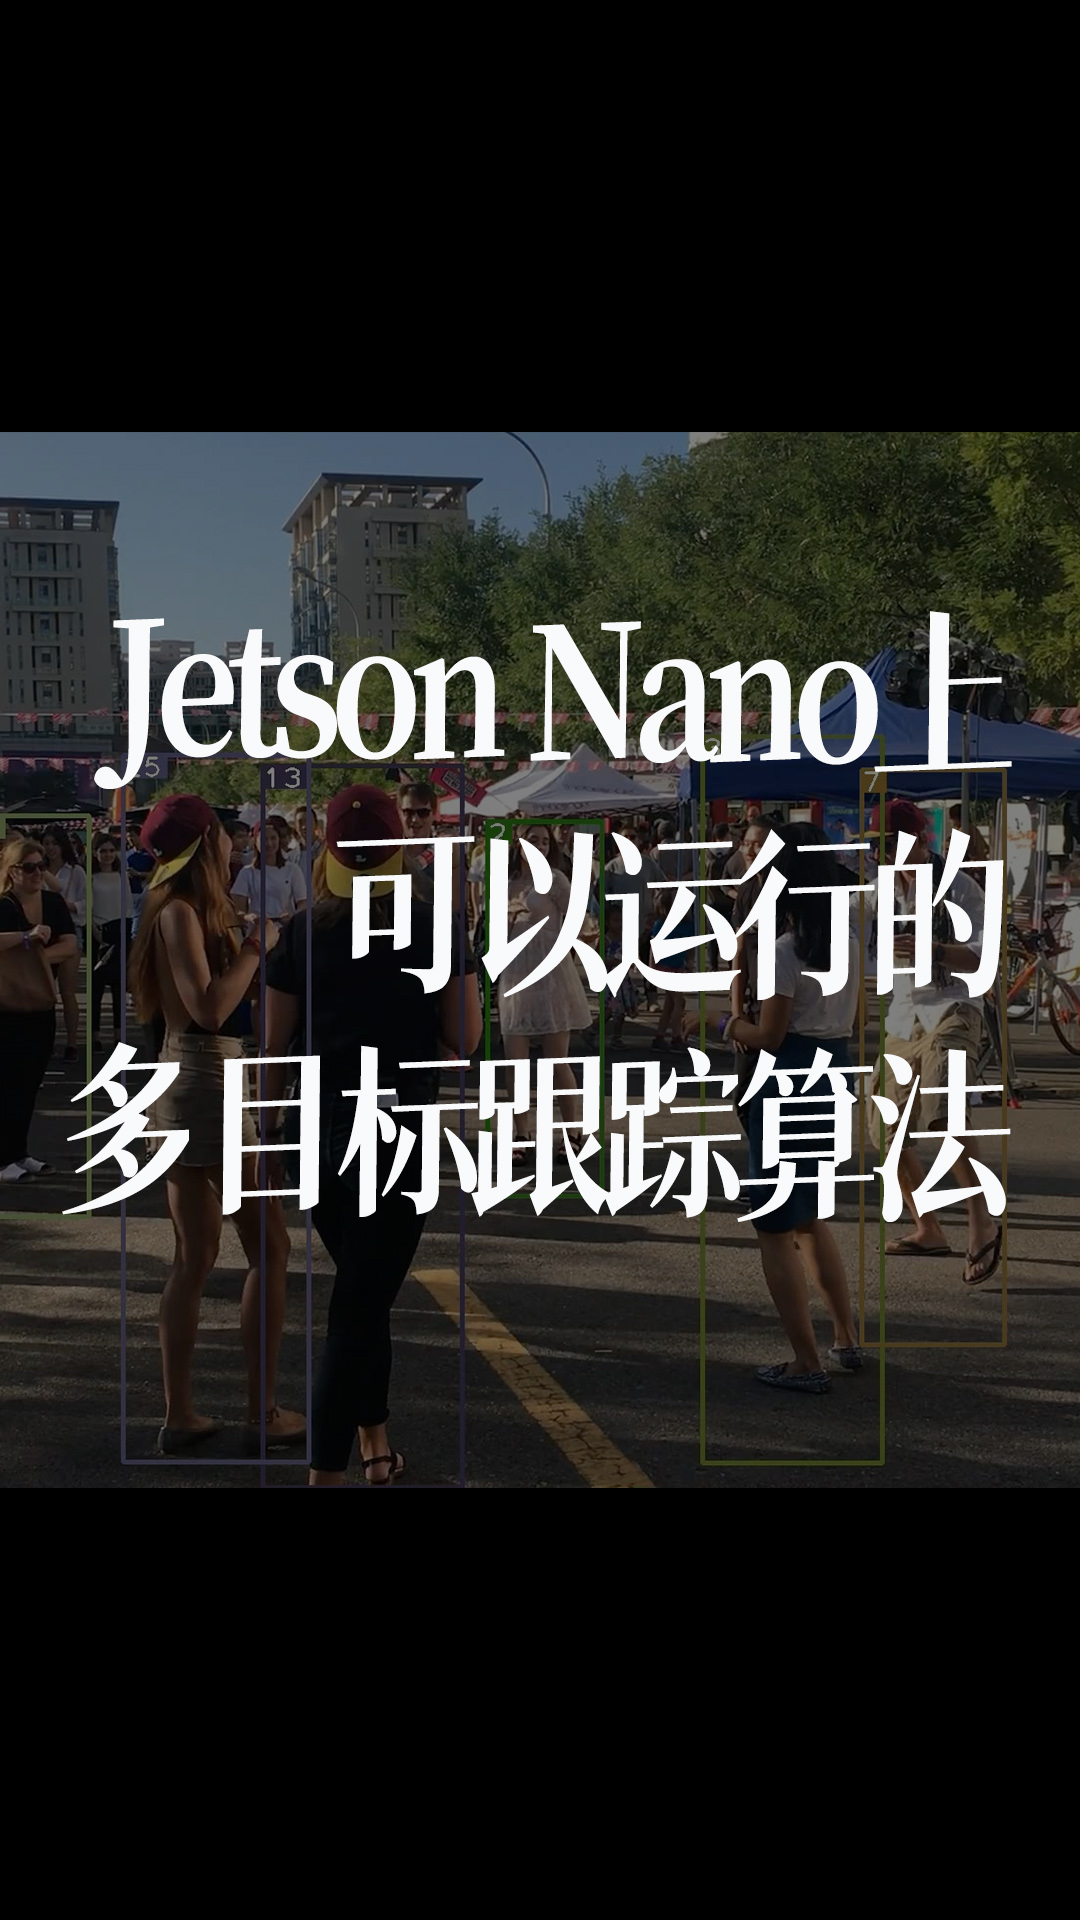 Jetson Nano上可以運行的多目標跟蹤算法